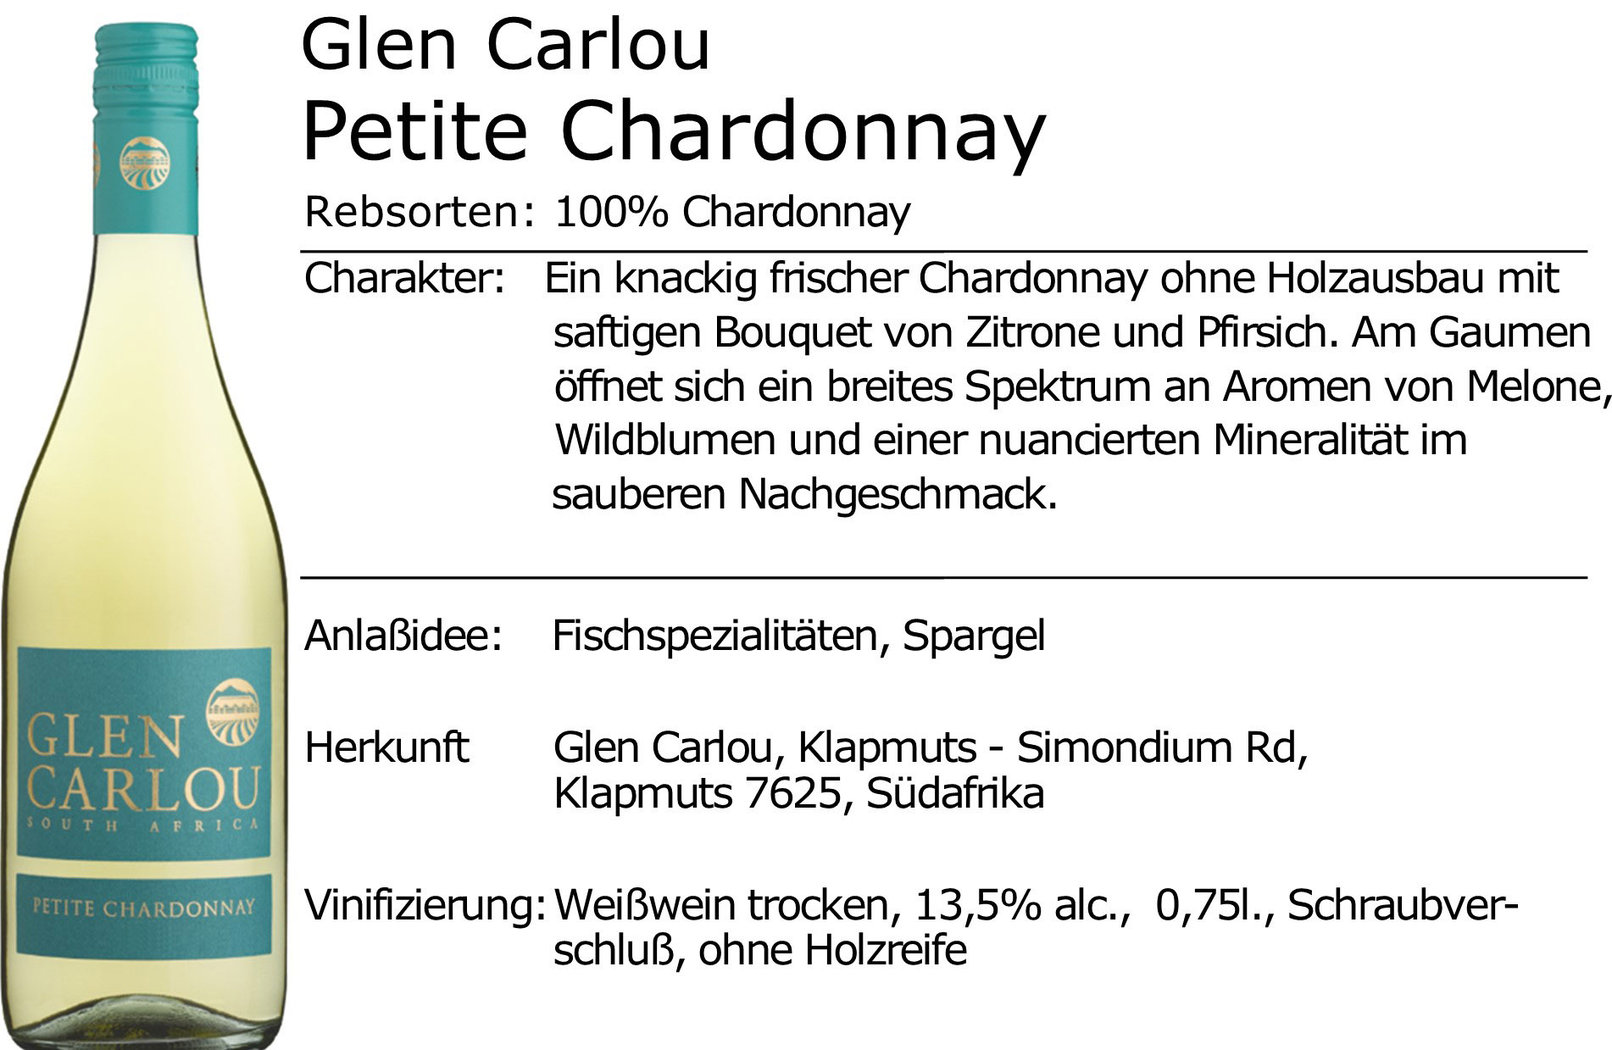 Glen Carlou Petite Chardonnay 2021